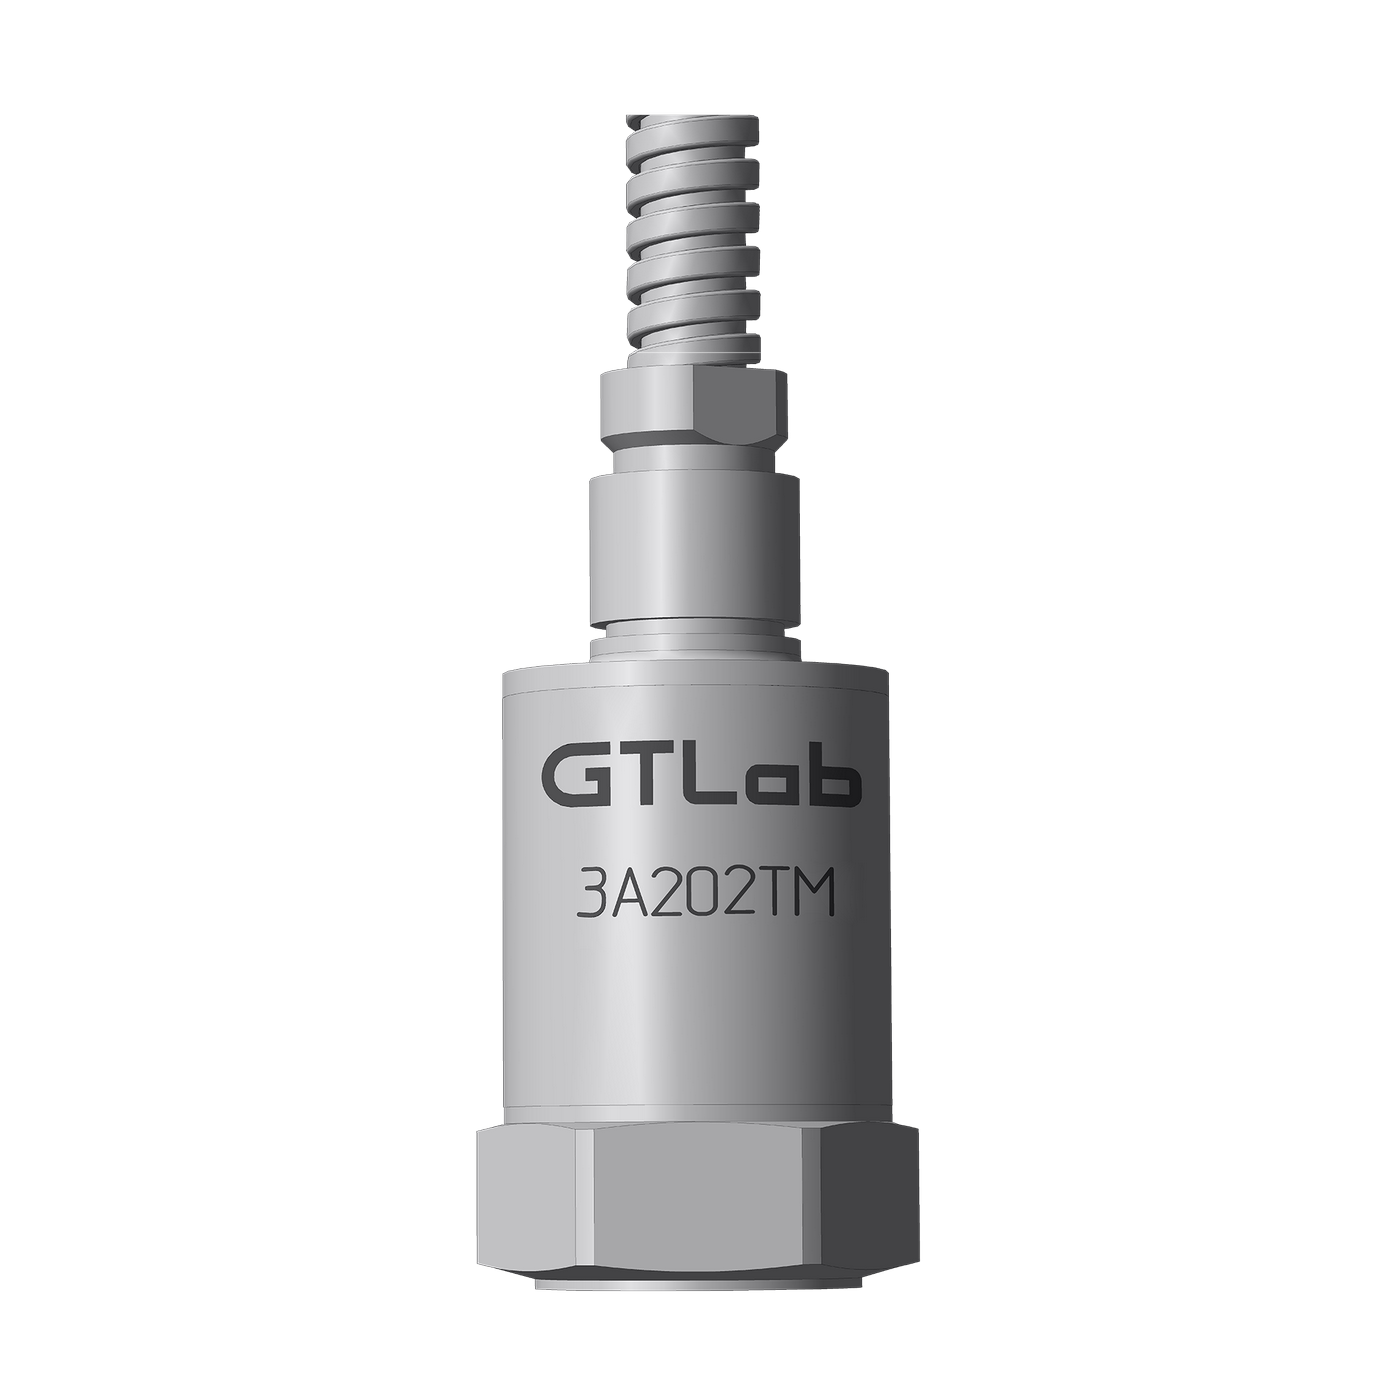 Датчик виброперемещения с токовым выходом промышленный GTLAB 3A202TM-80 Дозиметры